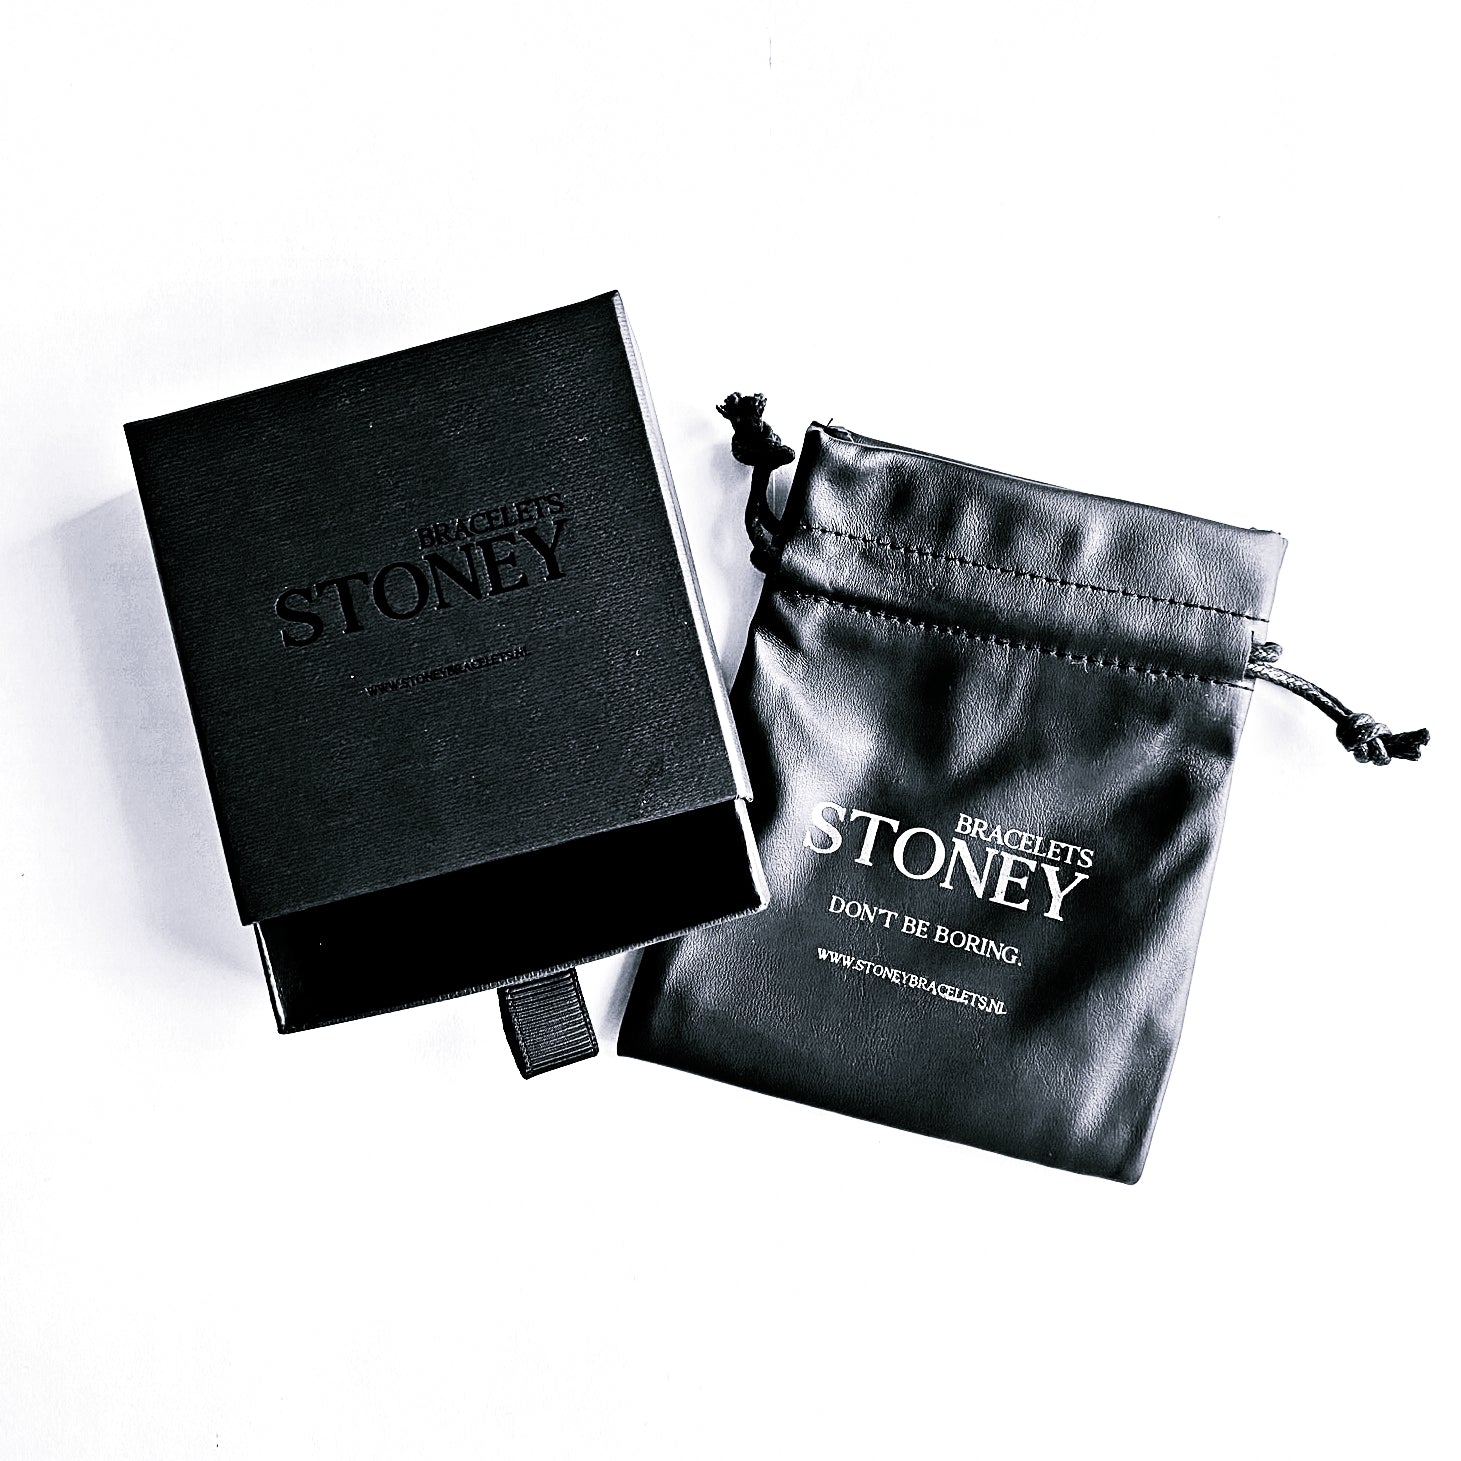 Een zwart etui met het woord Stoney Bracelets erop, perfect voor het opbergen van uw Gold Turquoise Stones (6 mm) sieraden of armband.